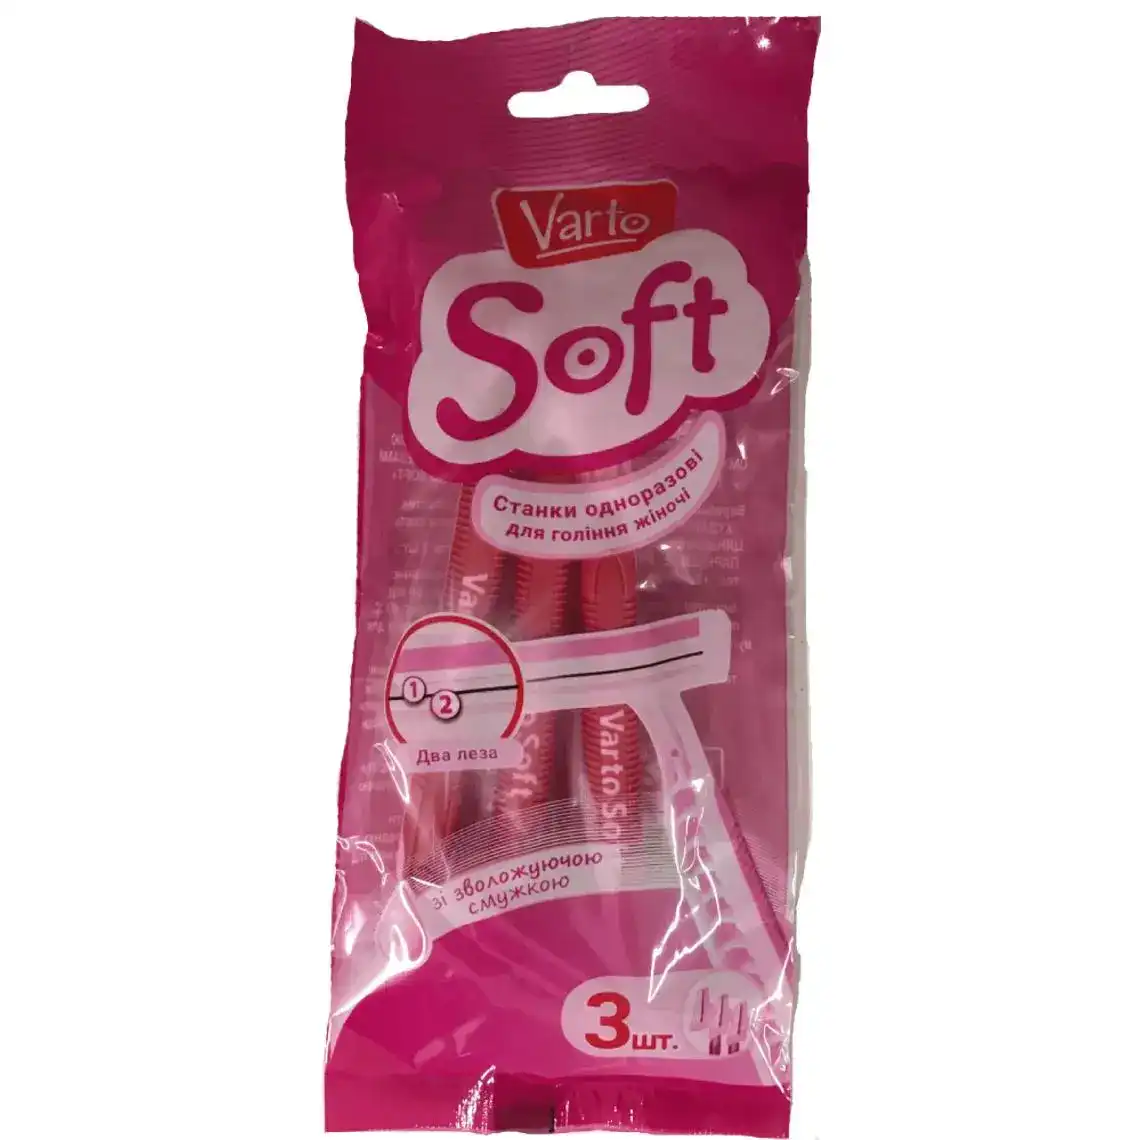 Станок для гоління Varto Soft жіночий одноразовий 3 шт.